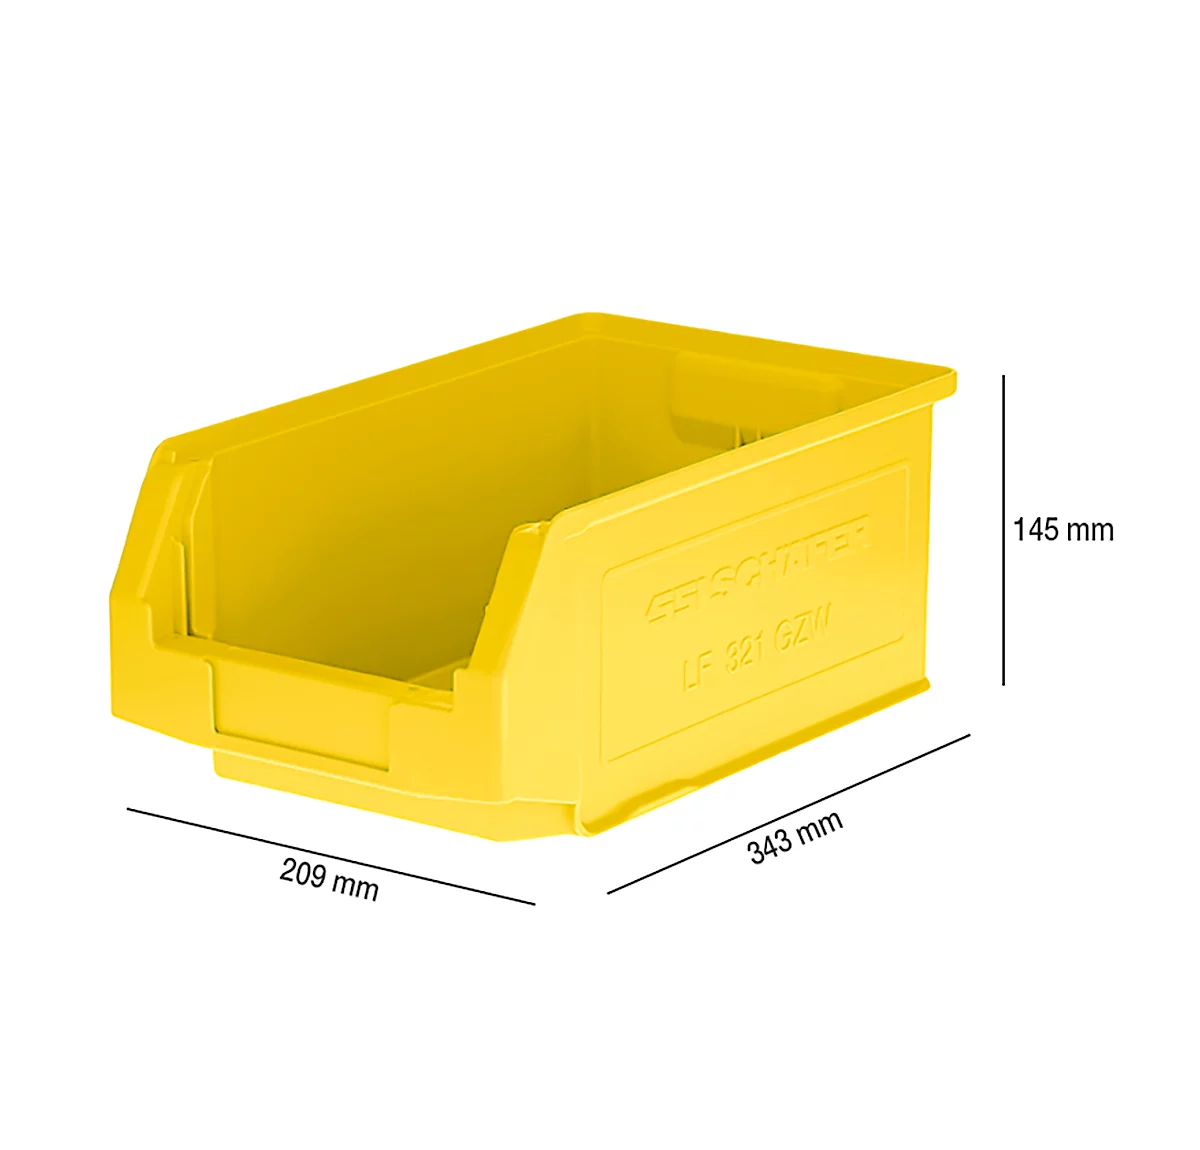 Sichtlagerkasten SSI Schäfer LF 321, Polypropylen, L 343 x B 209 x H 145 mm, 7,5 l, gelb